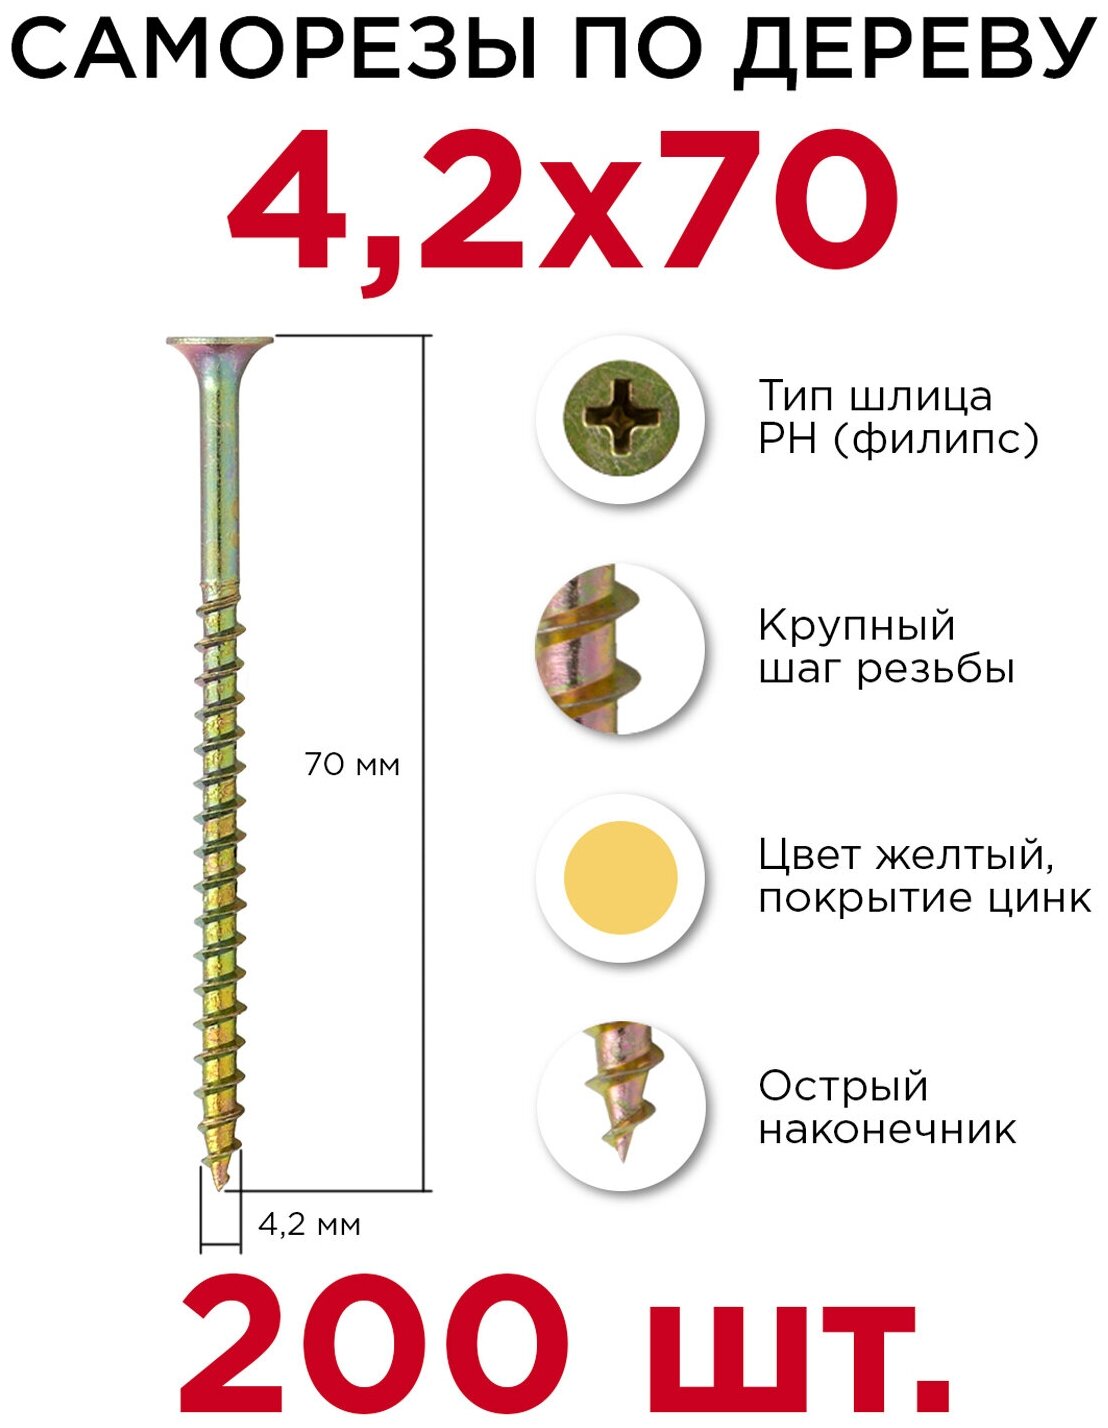 Саморезы Профикреп 4,2 х 70 мм, 200 шт